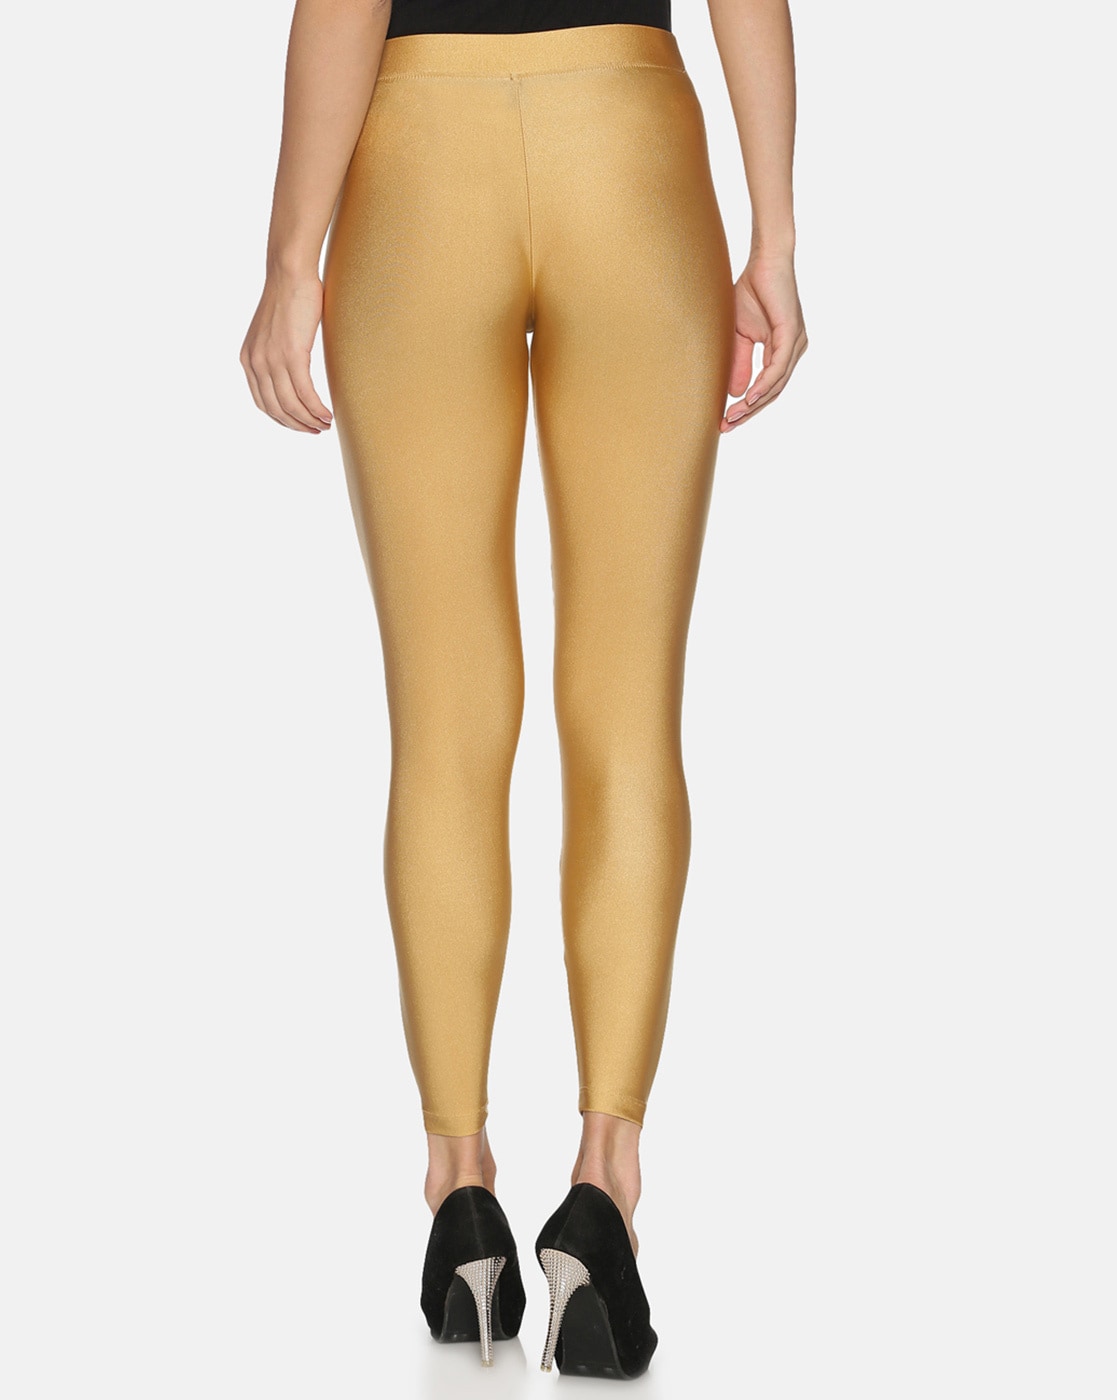 Buy Golden Cream Leggings for Women by SRISHTI Online | Ajio.com-cokhiquangminh.vn